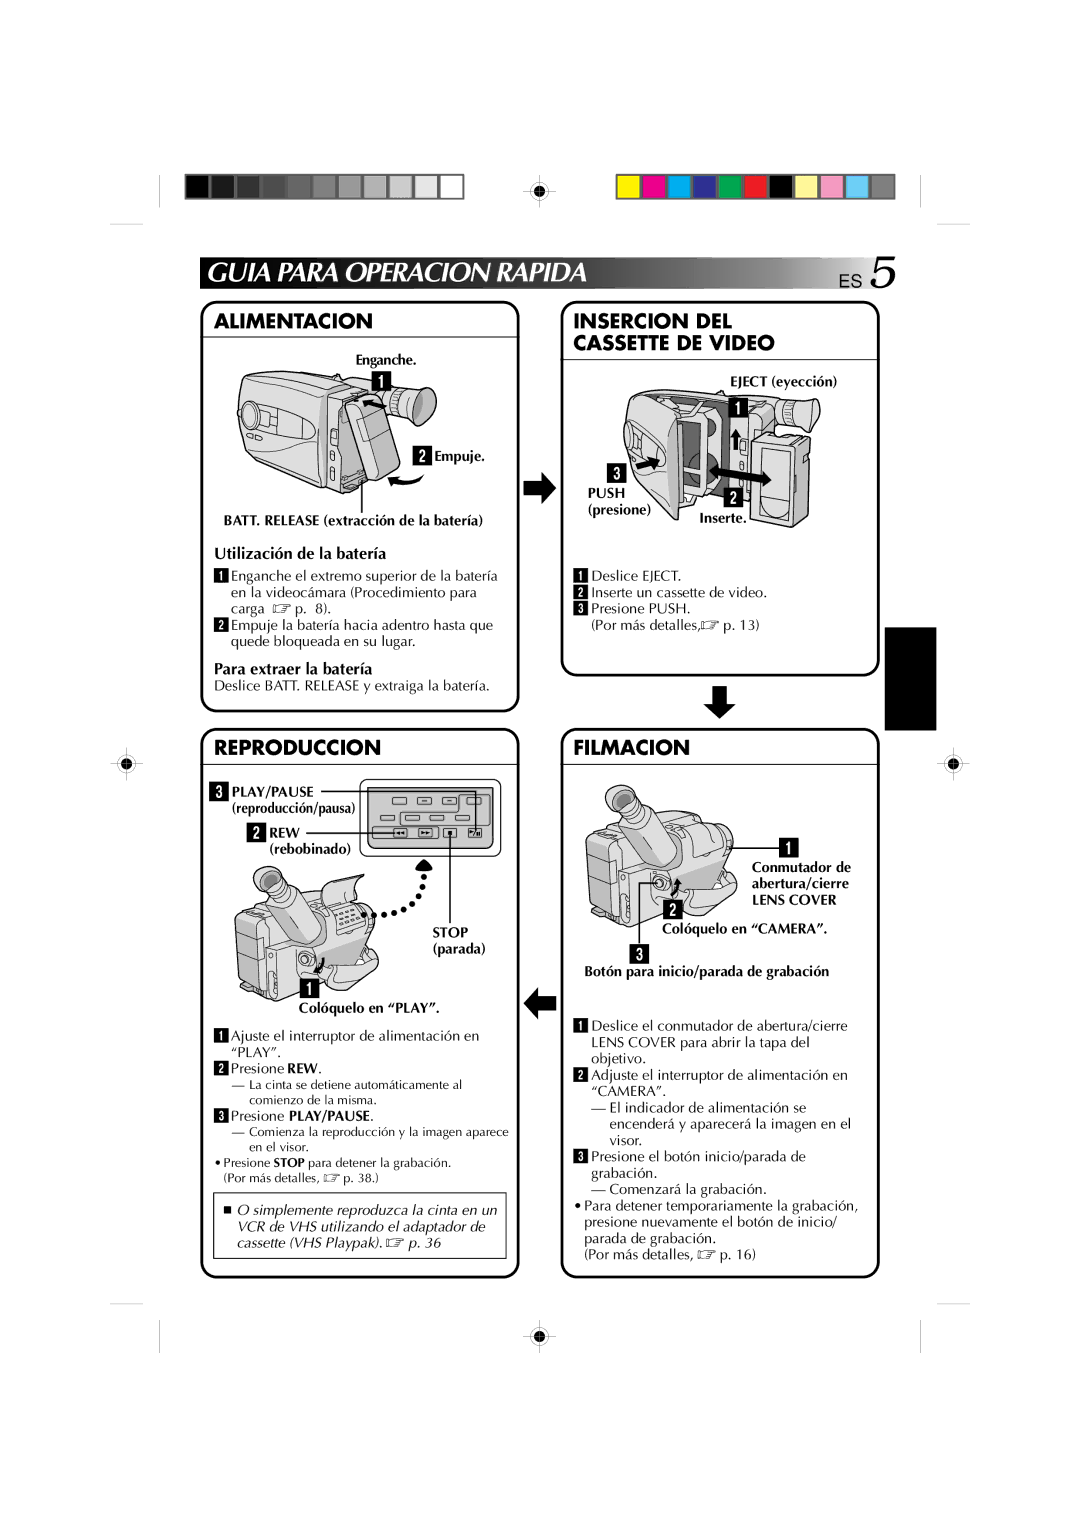 JVC GR-AX1027 manual Guia Para Operacion Rapida, Alimentacion, Reproduccion, Filmacion 